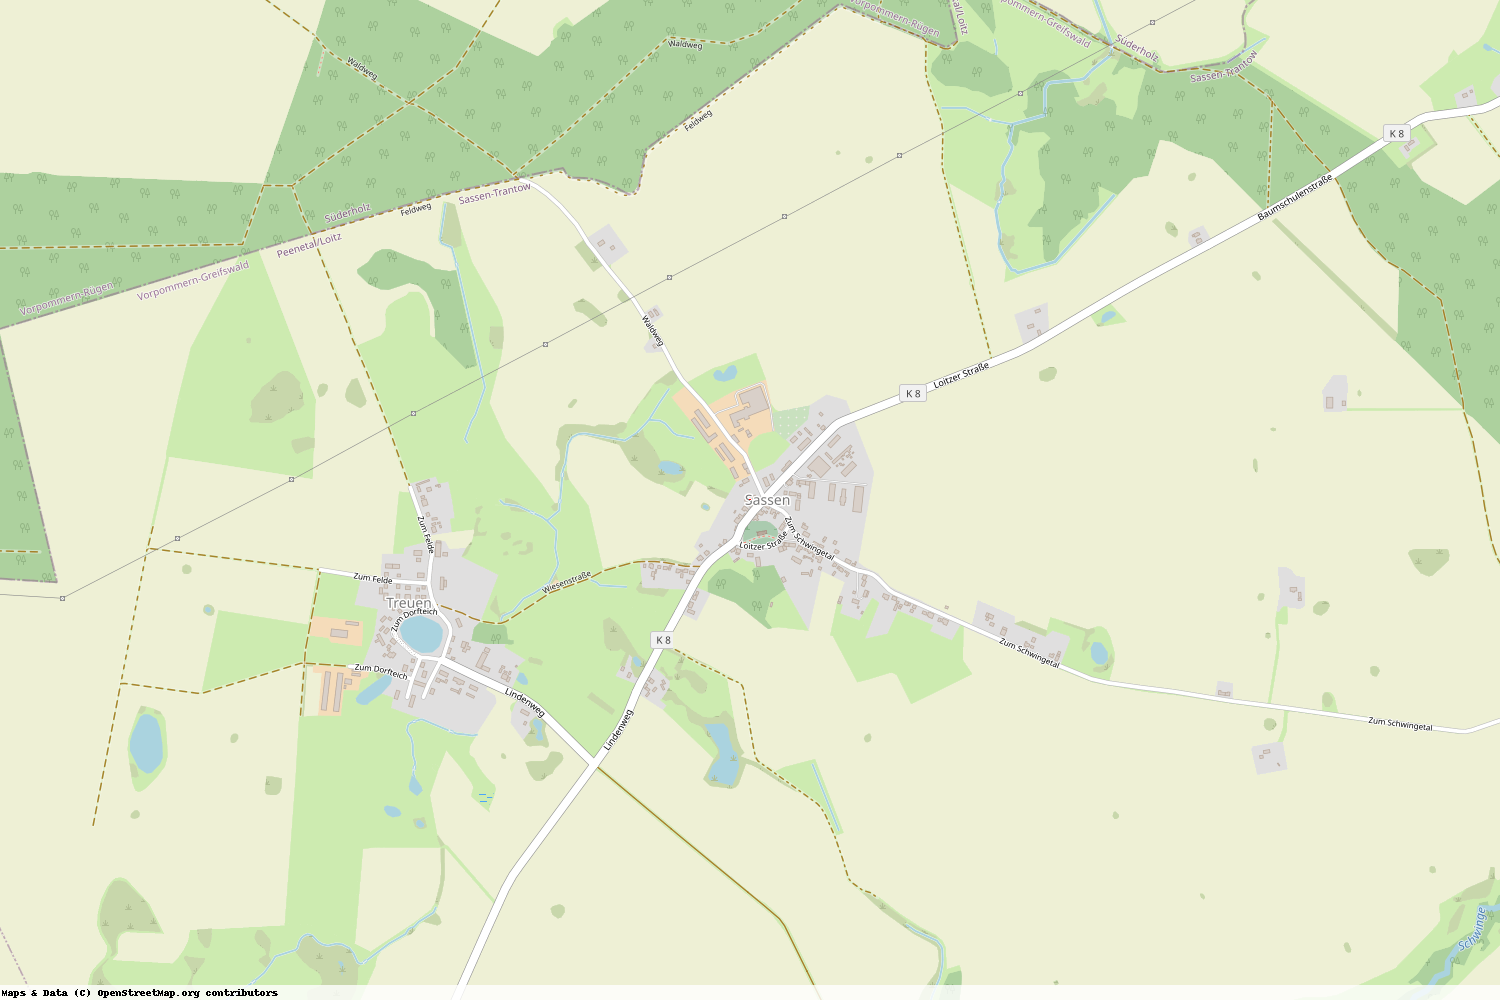 Ist gerade Stromausfall in Mecklenburg-Vorpommern - Vorpommern-Greifswald - Sassen-Trantow?